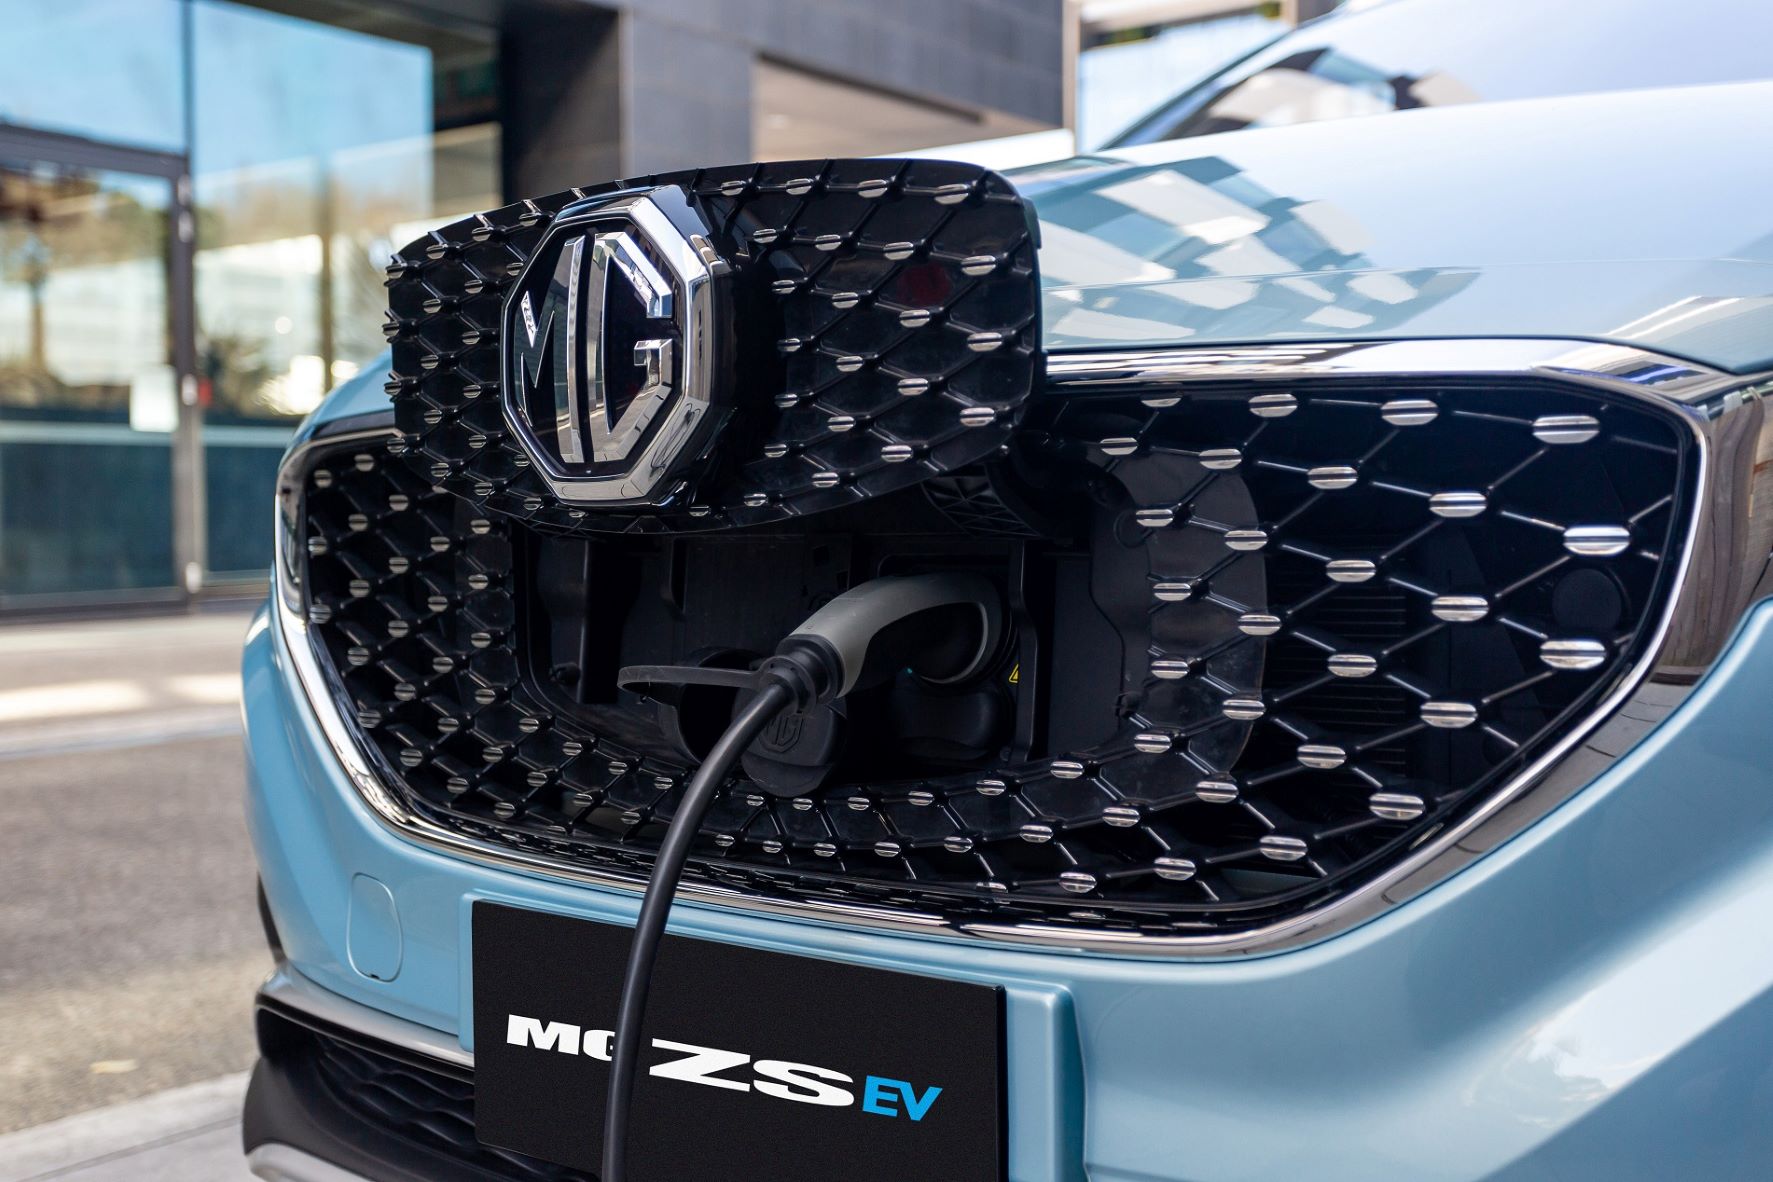 MG ZS EV charging